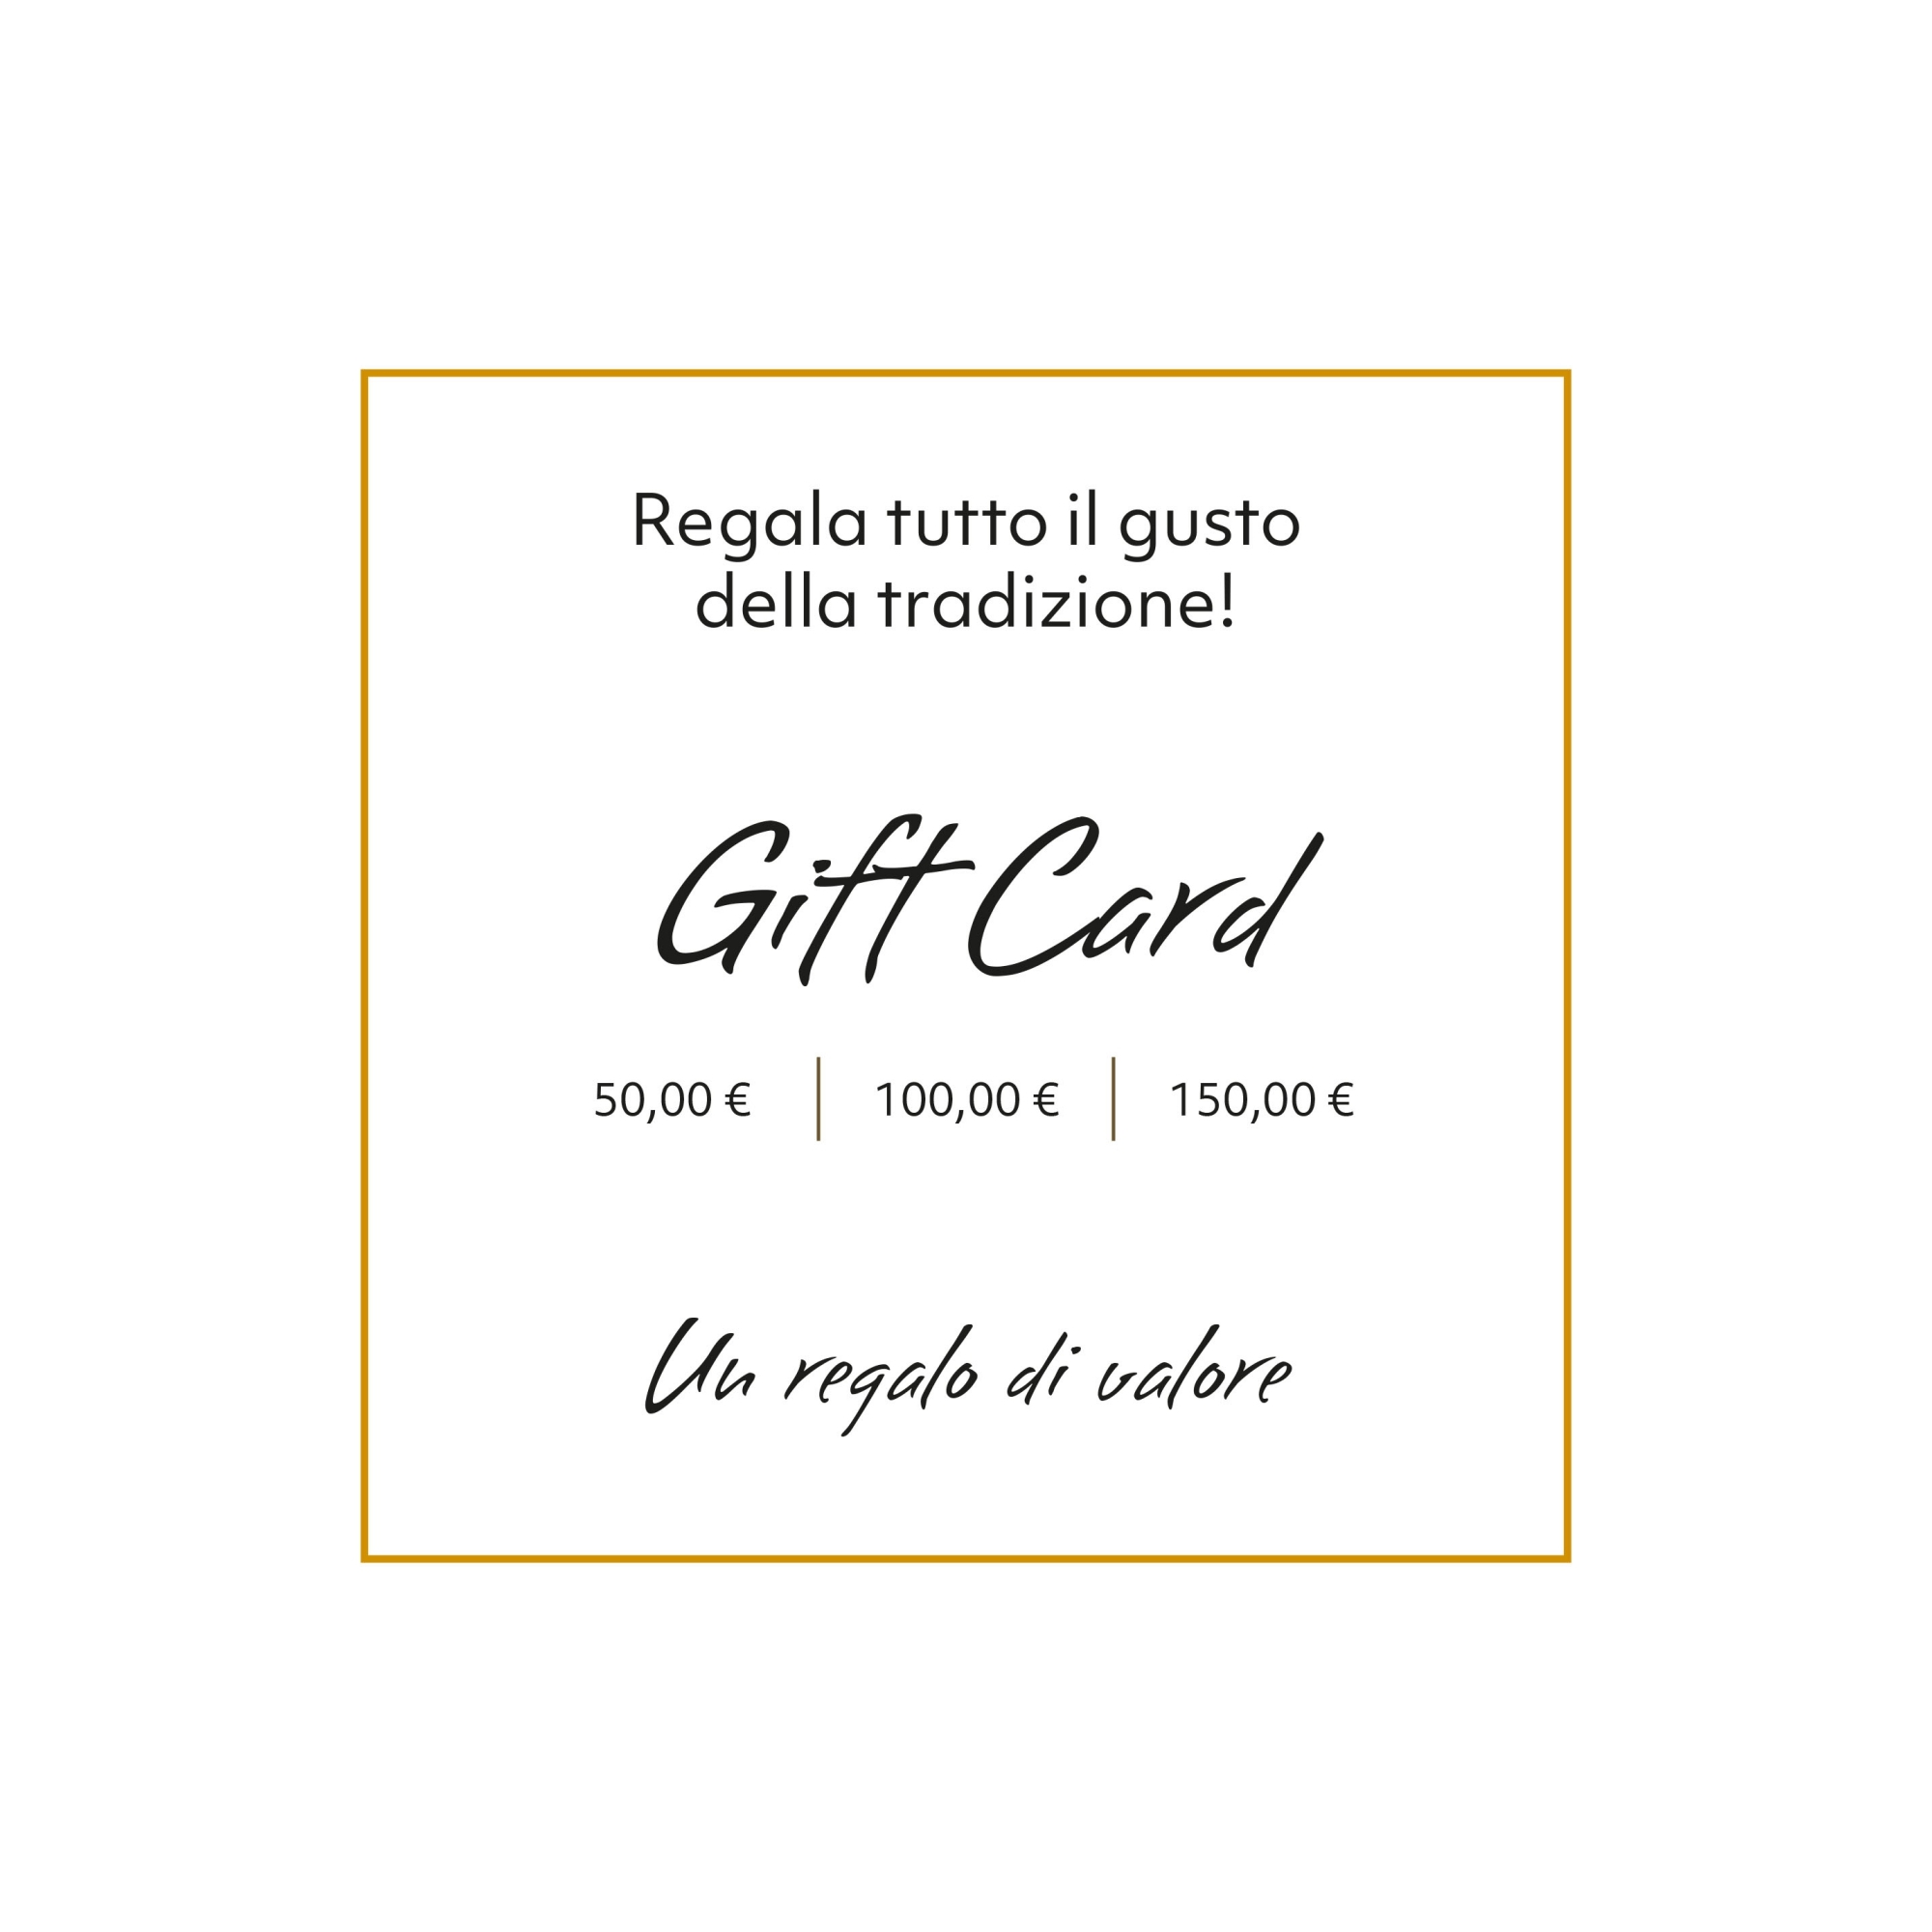 gift card salumipasini1